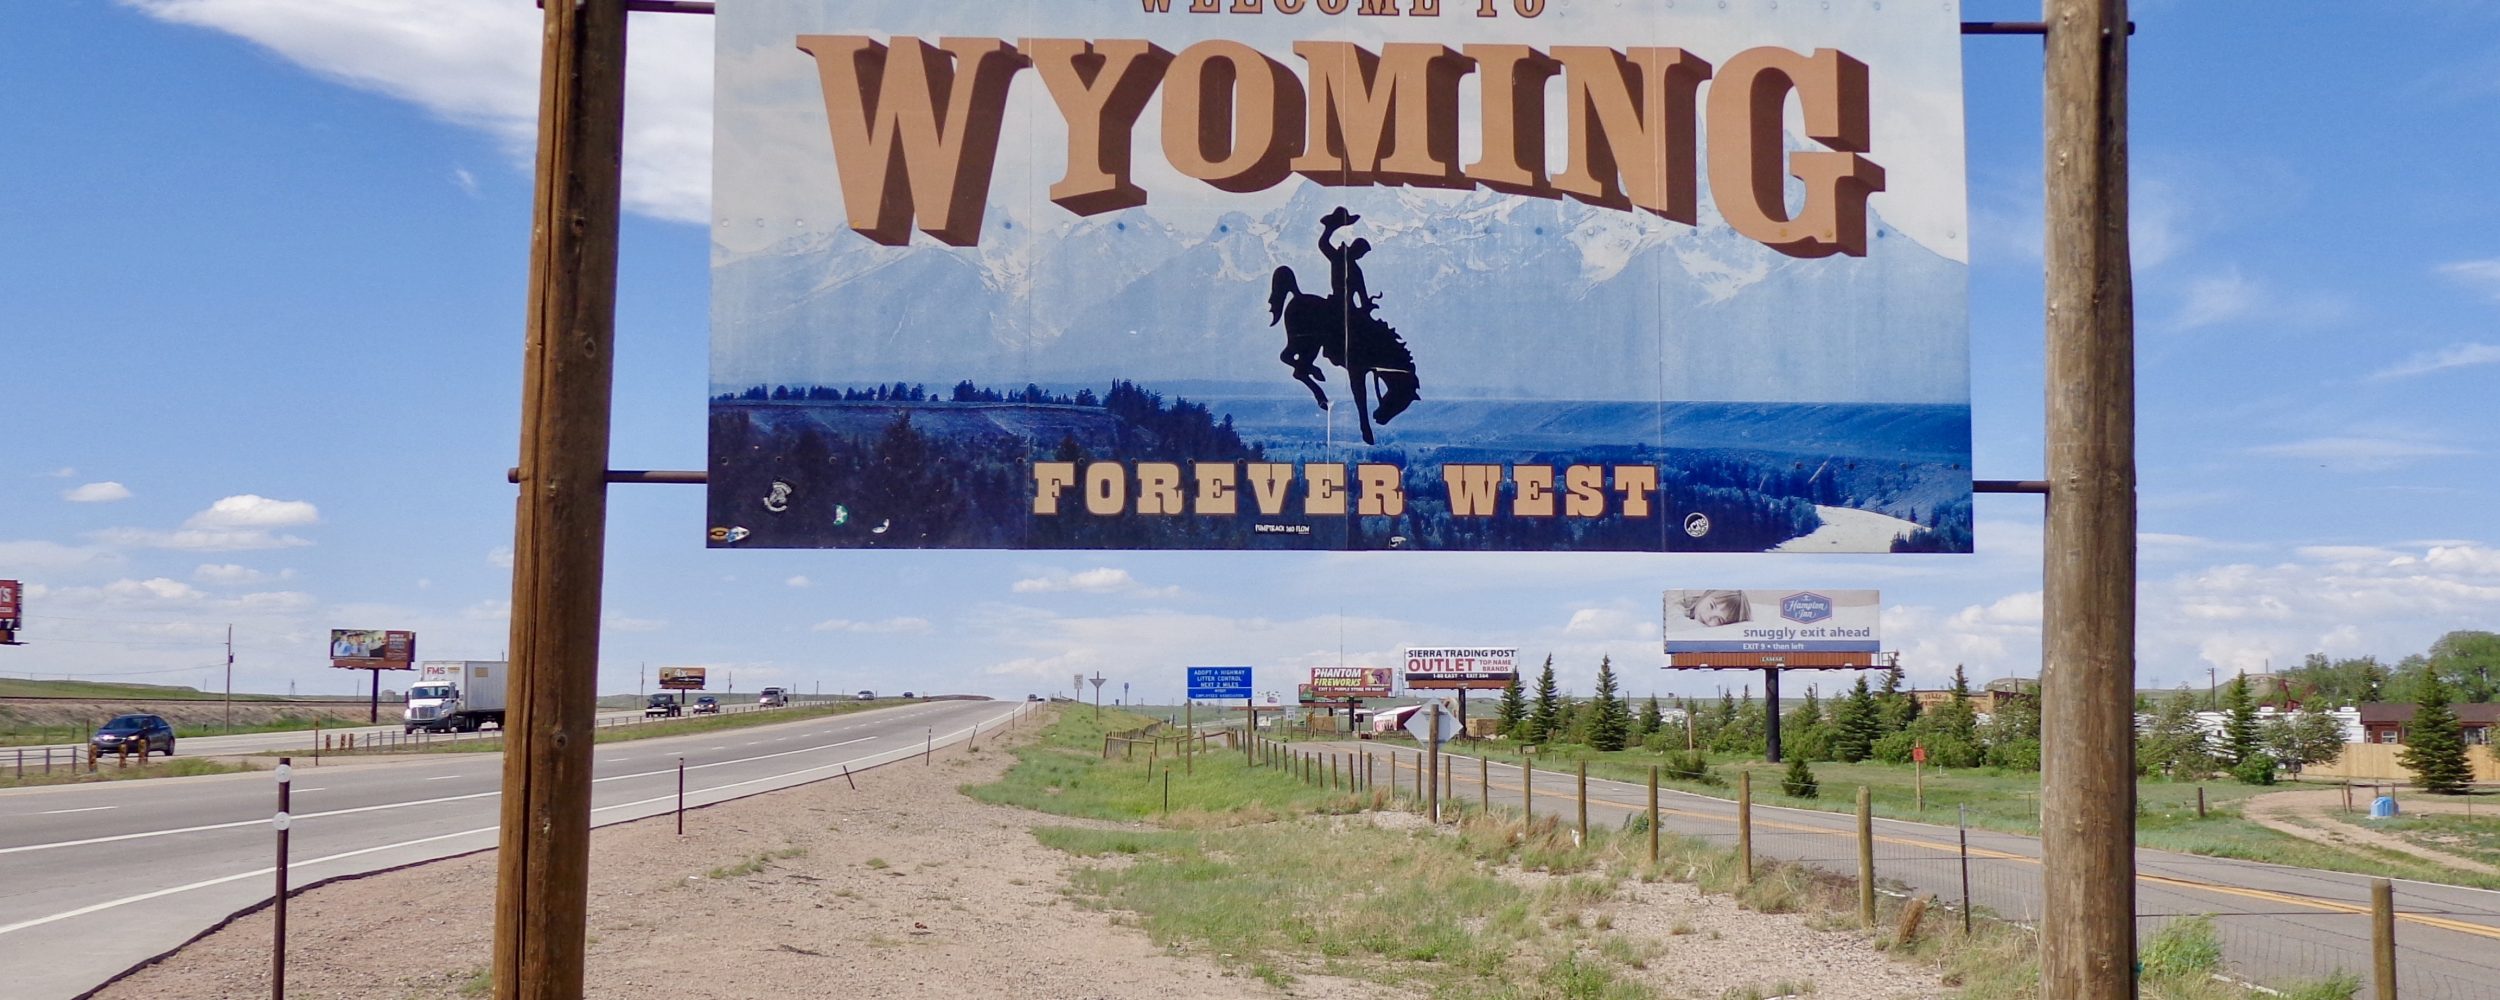 Pour toujours dans l'ouest du Wyoming